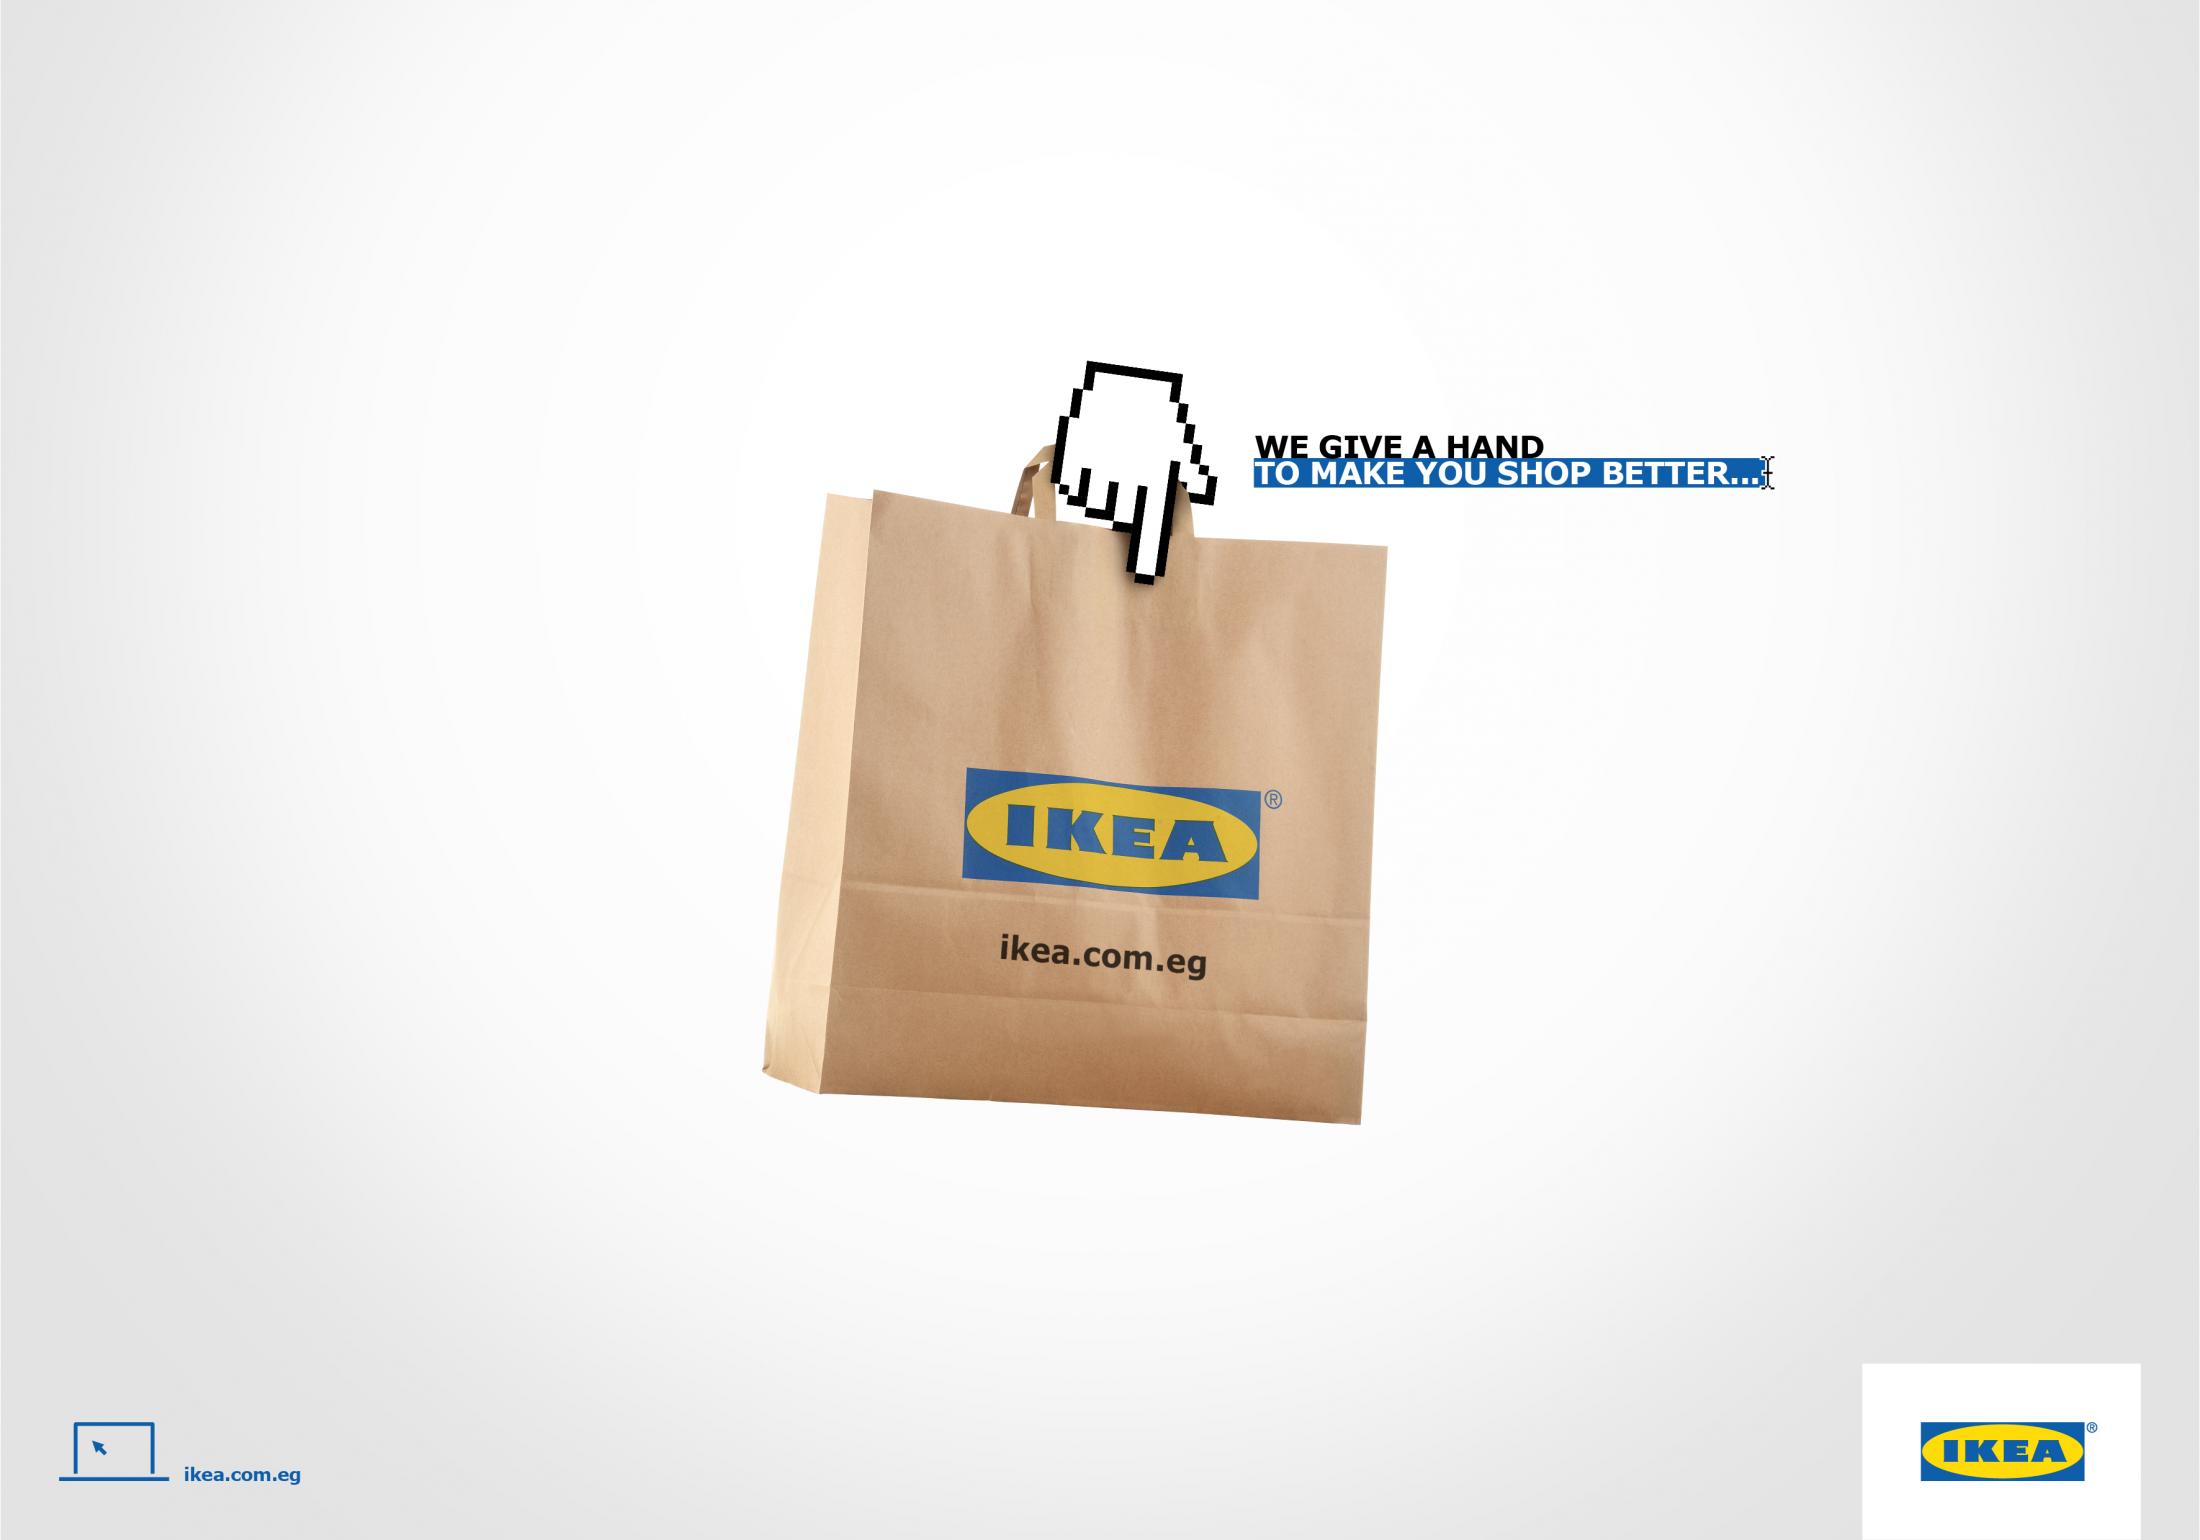 Para impulsar el lanzamiento de la tienda online de IKEA en Egipto se crearon estos tres mensajes publicitarios digitales.